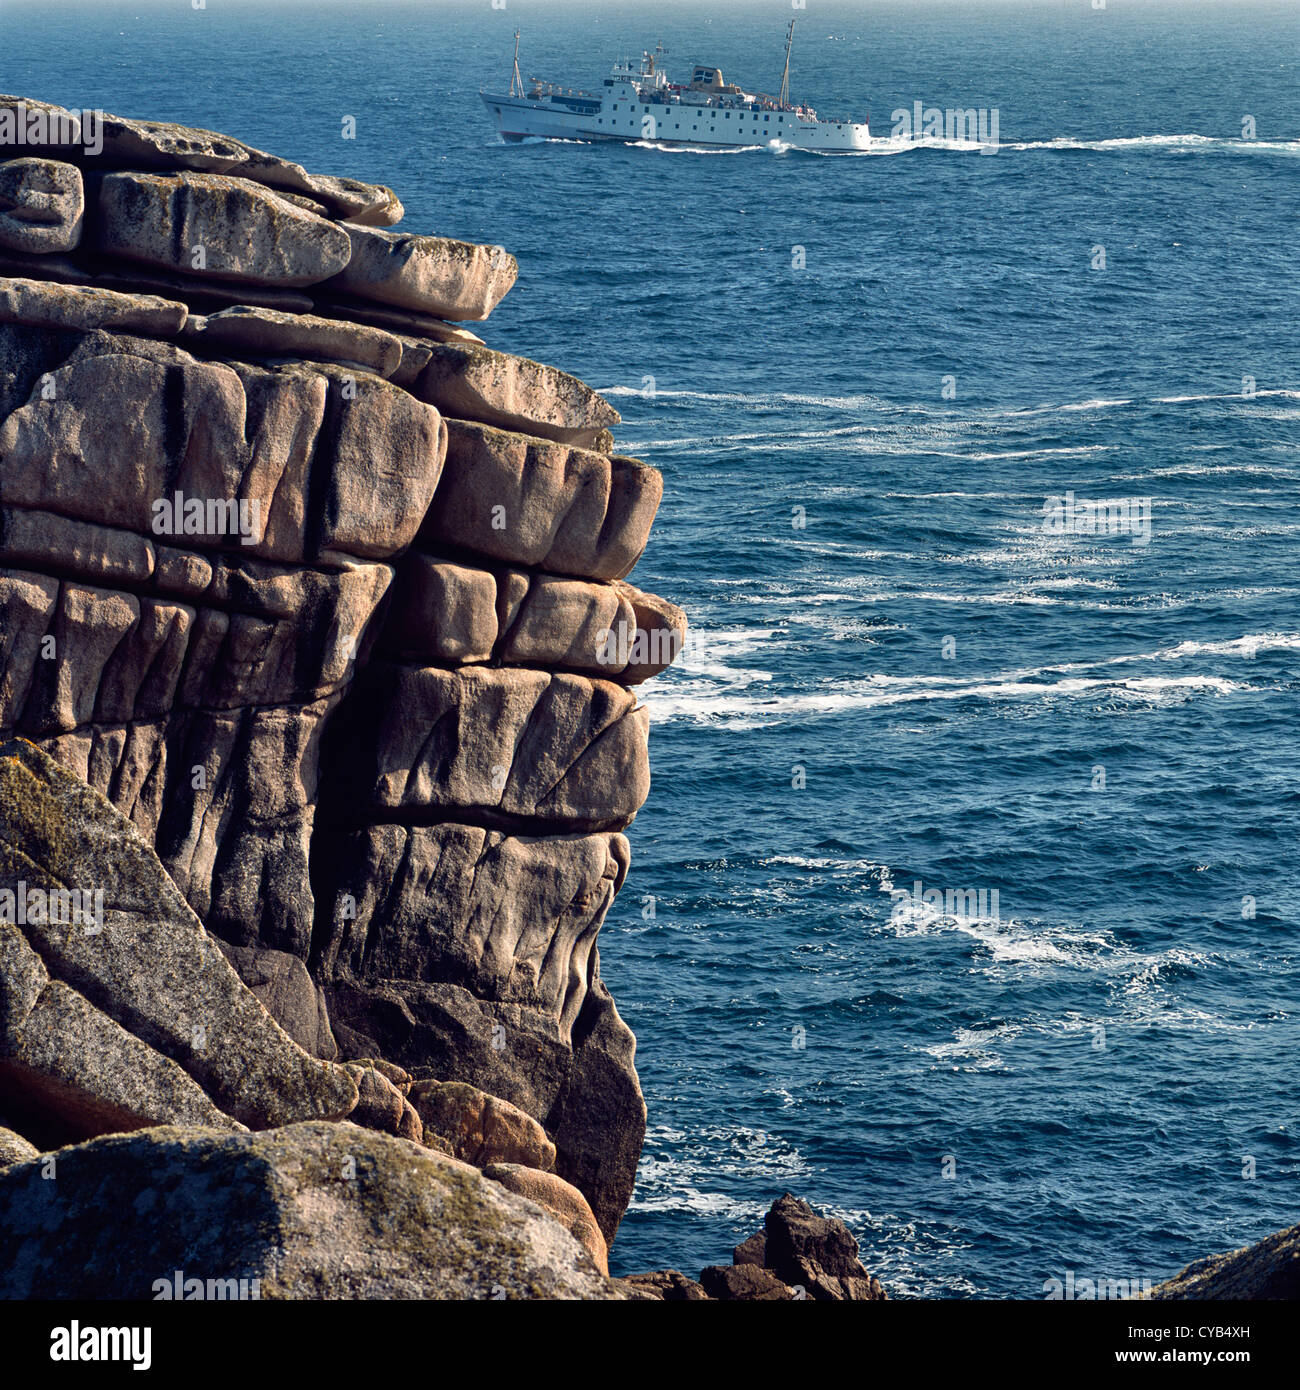 Il traghetto passeggeri 'Scillonian' naviga oltre St Mary's, Isles of Scilly, UK, in direzione di Penzance, Cornovaglia, attraverso un mare agile Foto Stock